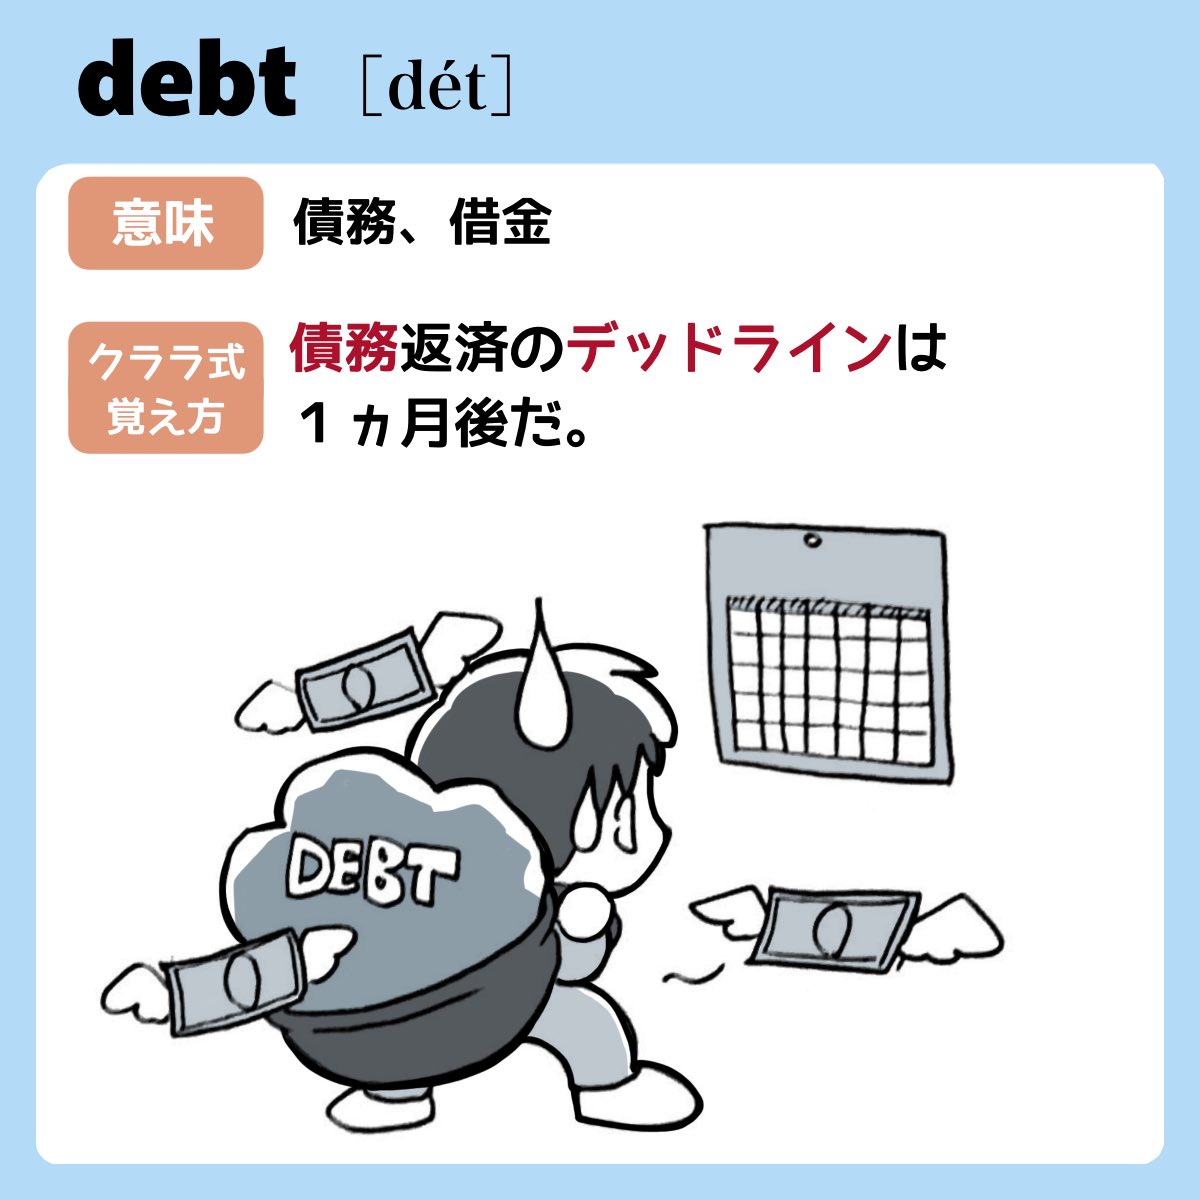 【ワンシーンで覚えようシリーズ】

日常会話でよく使う英単語
今日は『debt』

一瞬で記憶できるテクニックの詳しい解説は↓